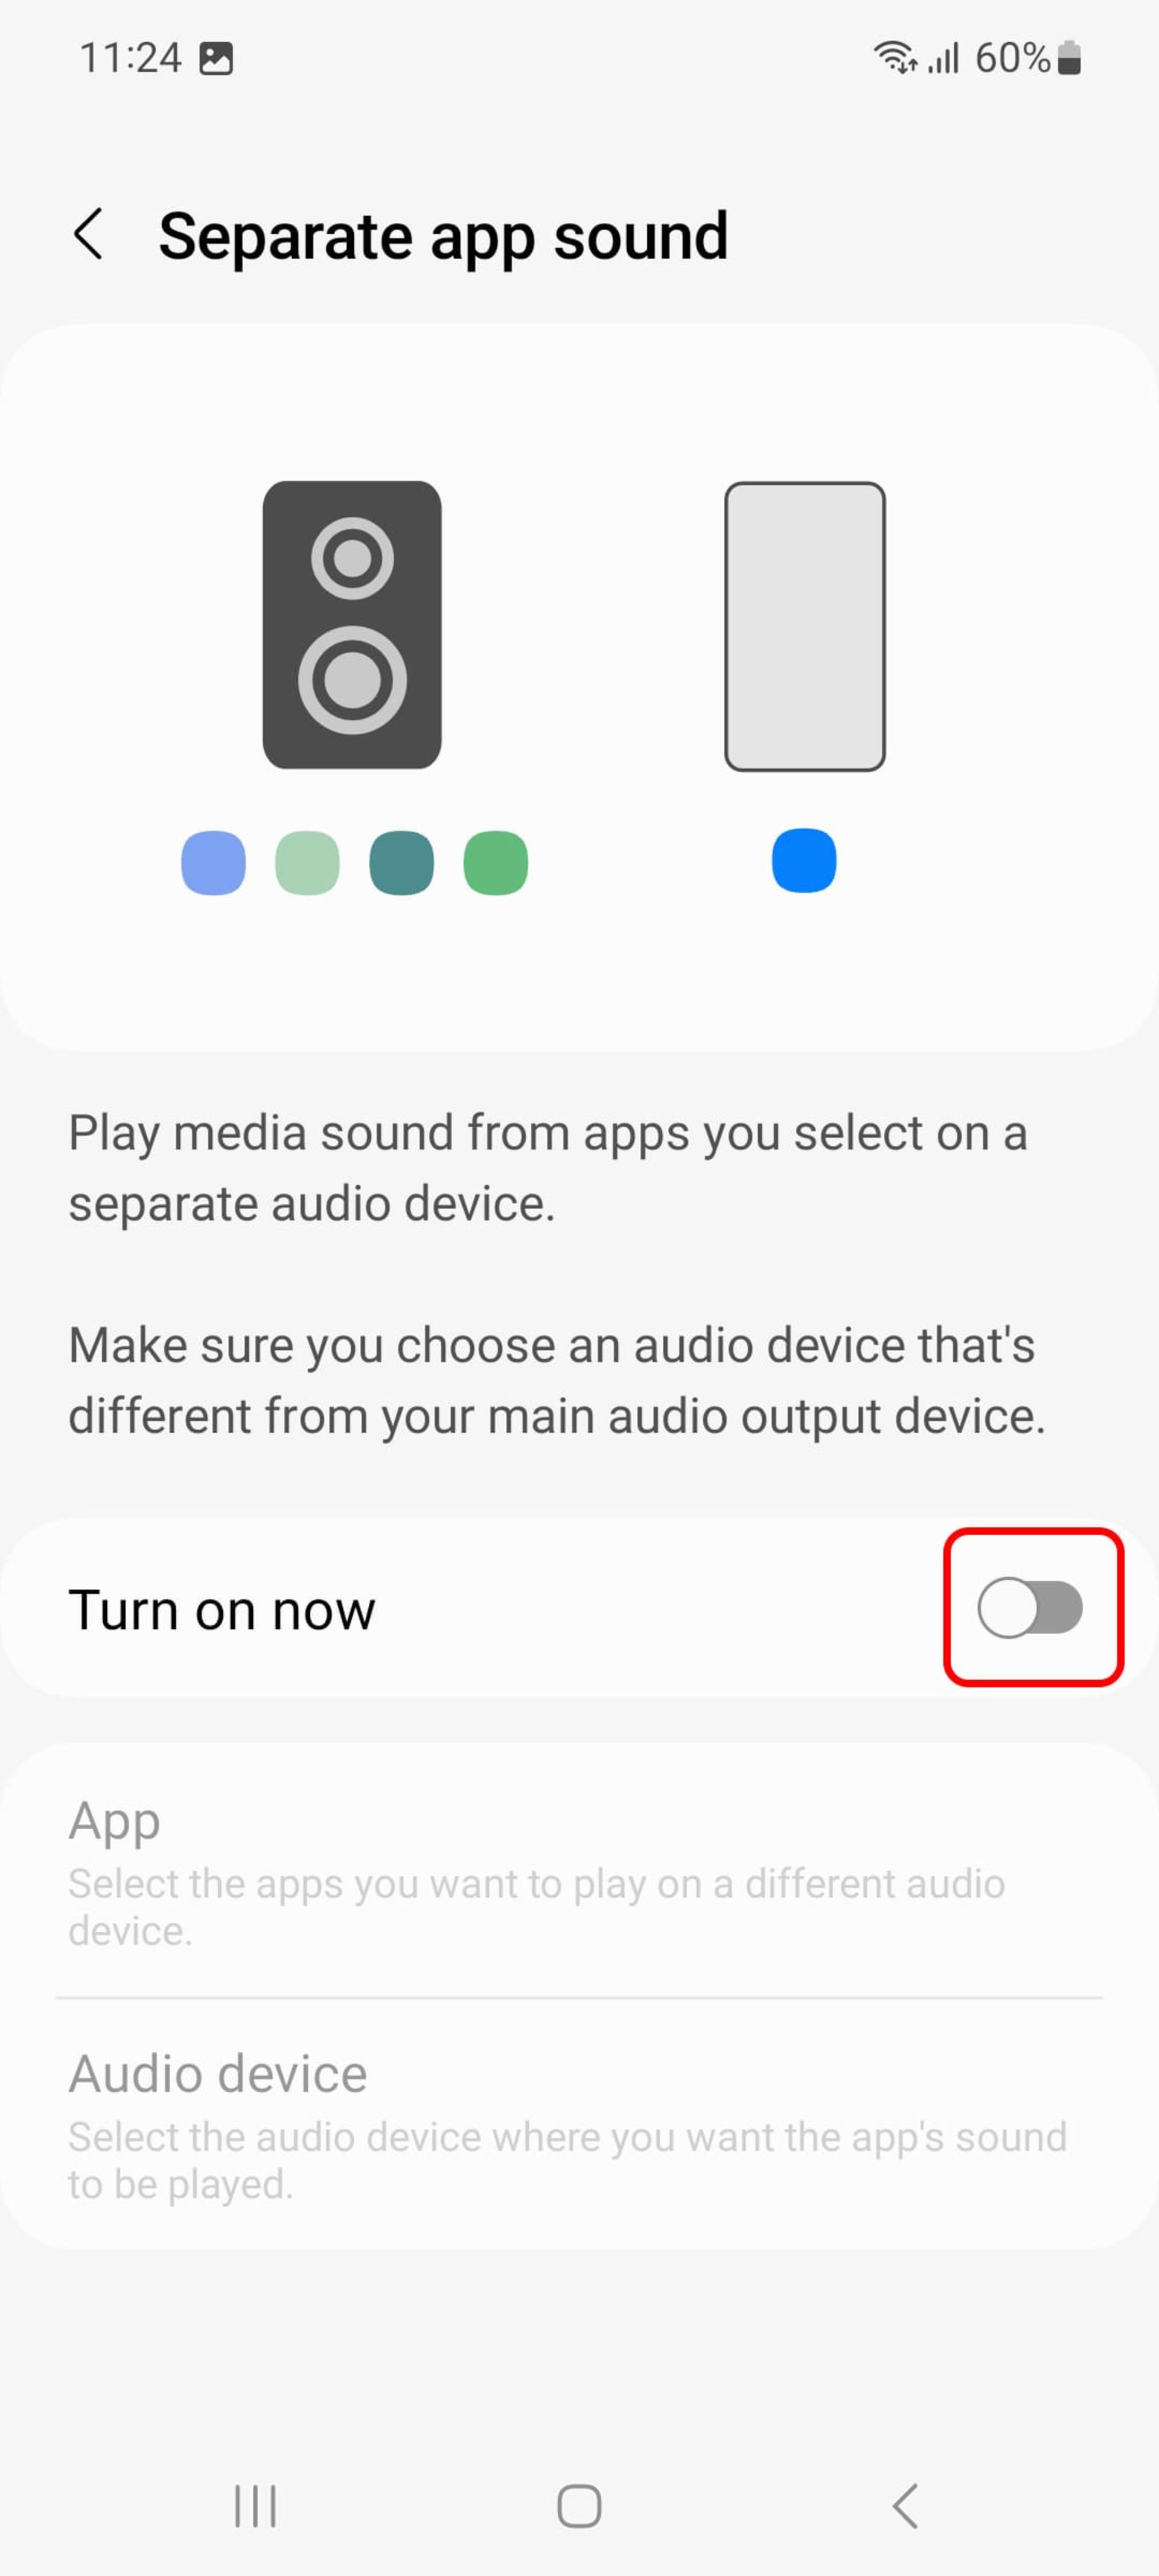 دکمه‌ی Turn on now در بخش قابلیت پخش جداگانه صدای اپلیکیشن